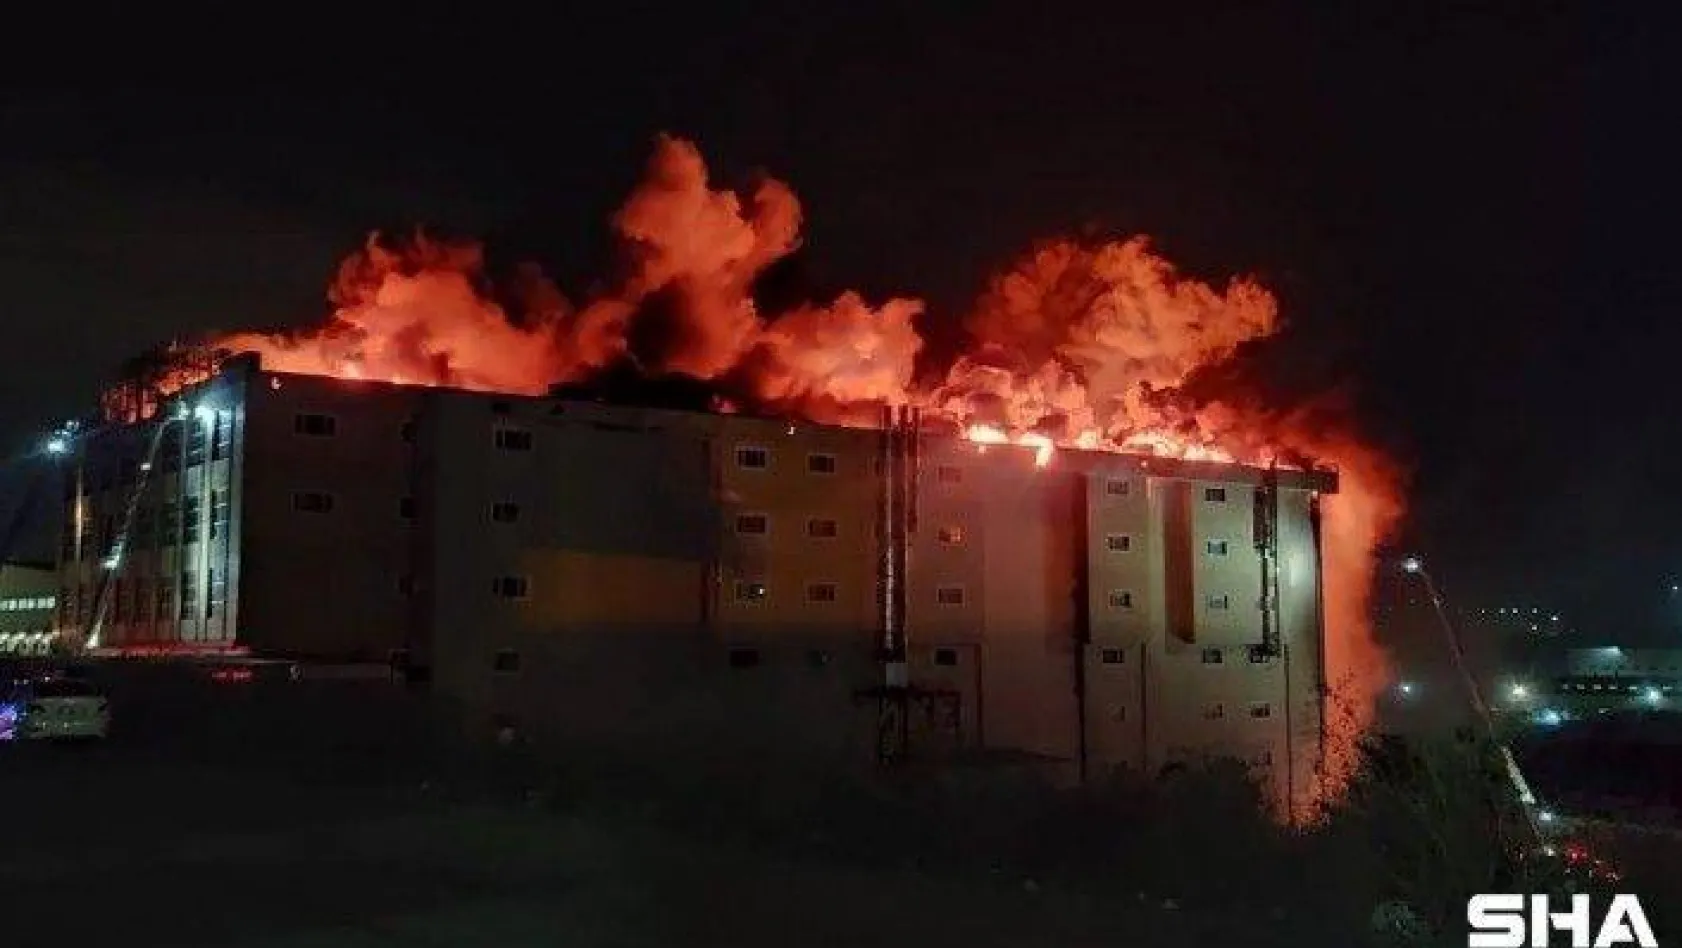 Arnavutköy'de 4 katlı tekstil fabrikasının çatısında çıkan yangın devam ediyor